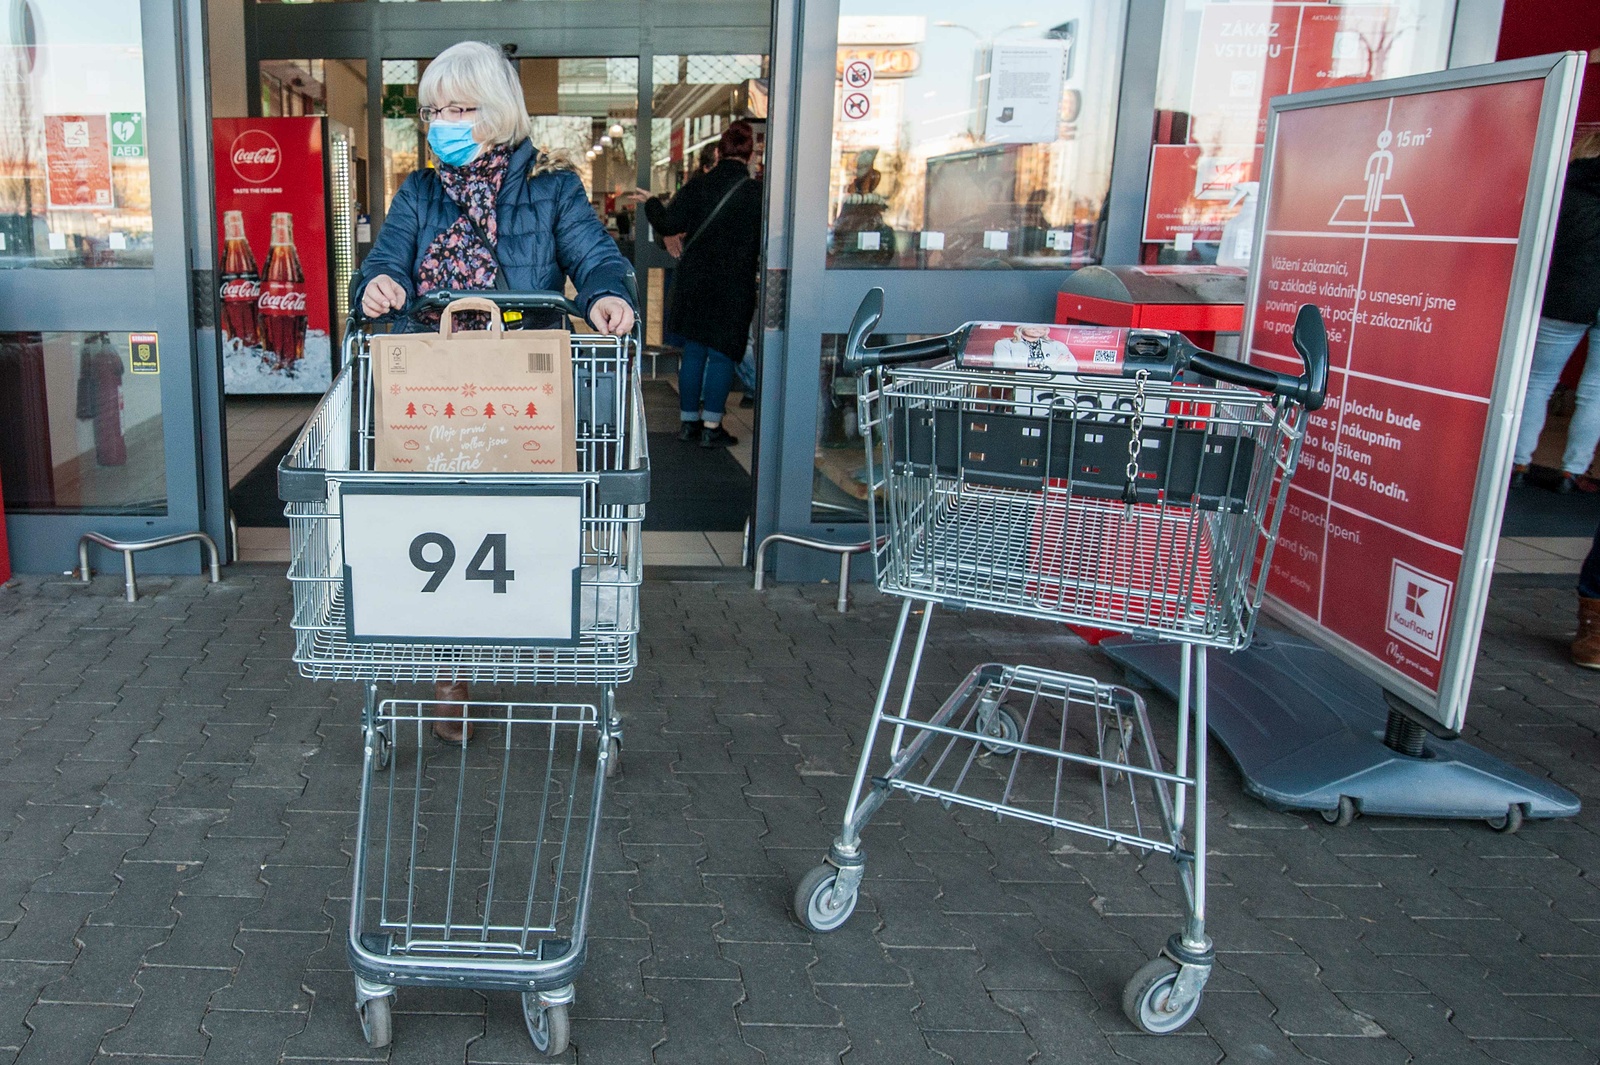 FOTOGALERIE: Do obchodu jen s nákupním vozíkem - Plzeňský deník